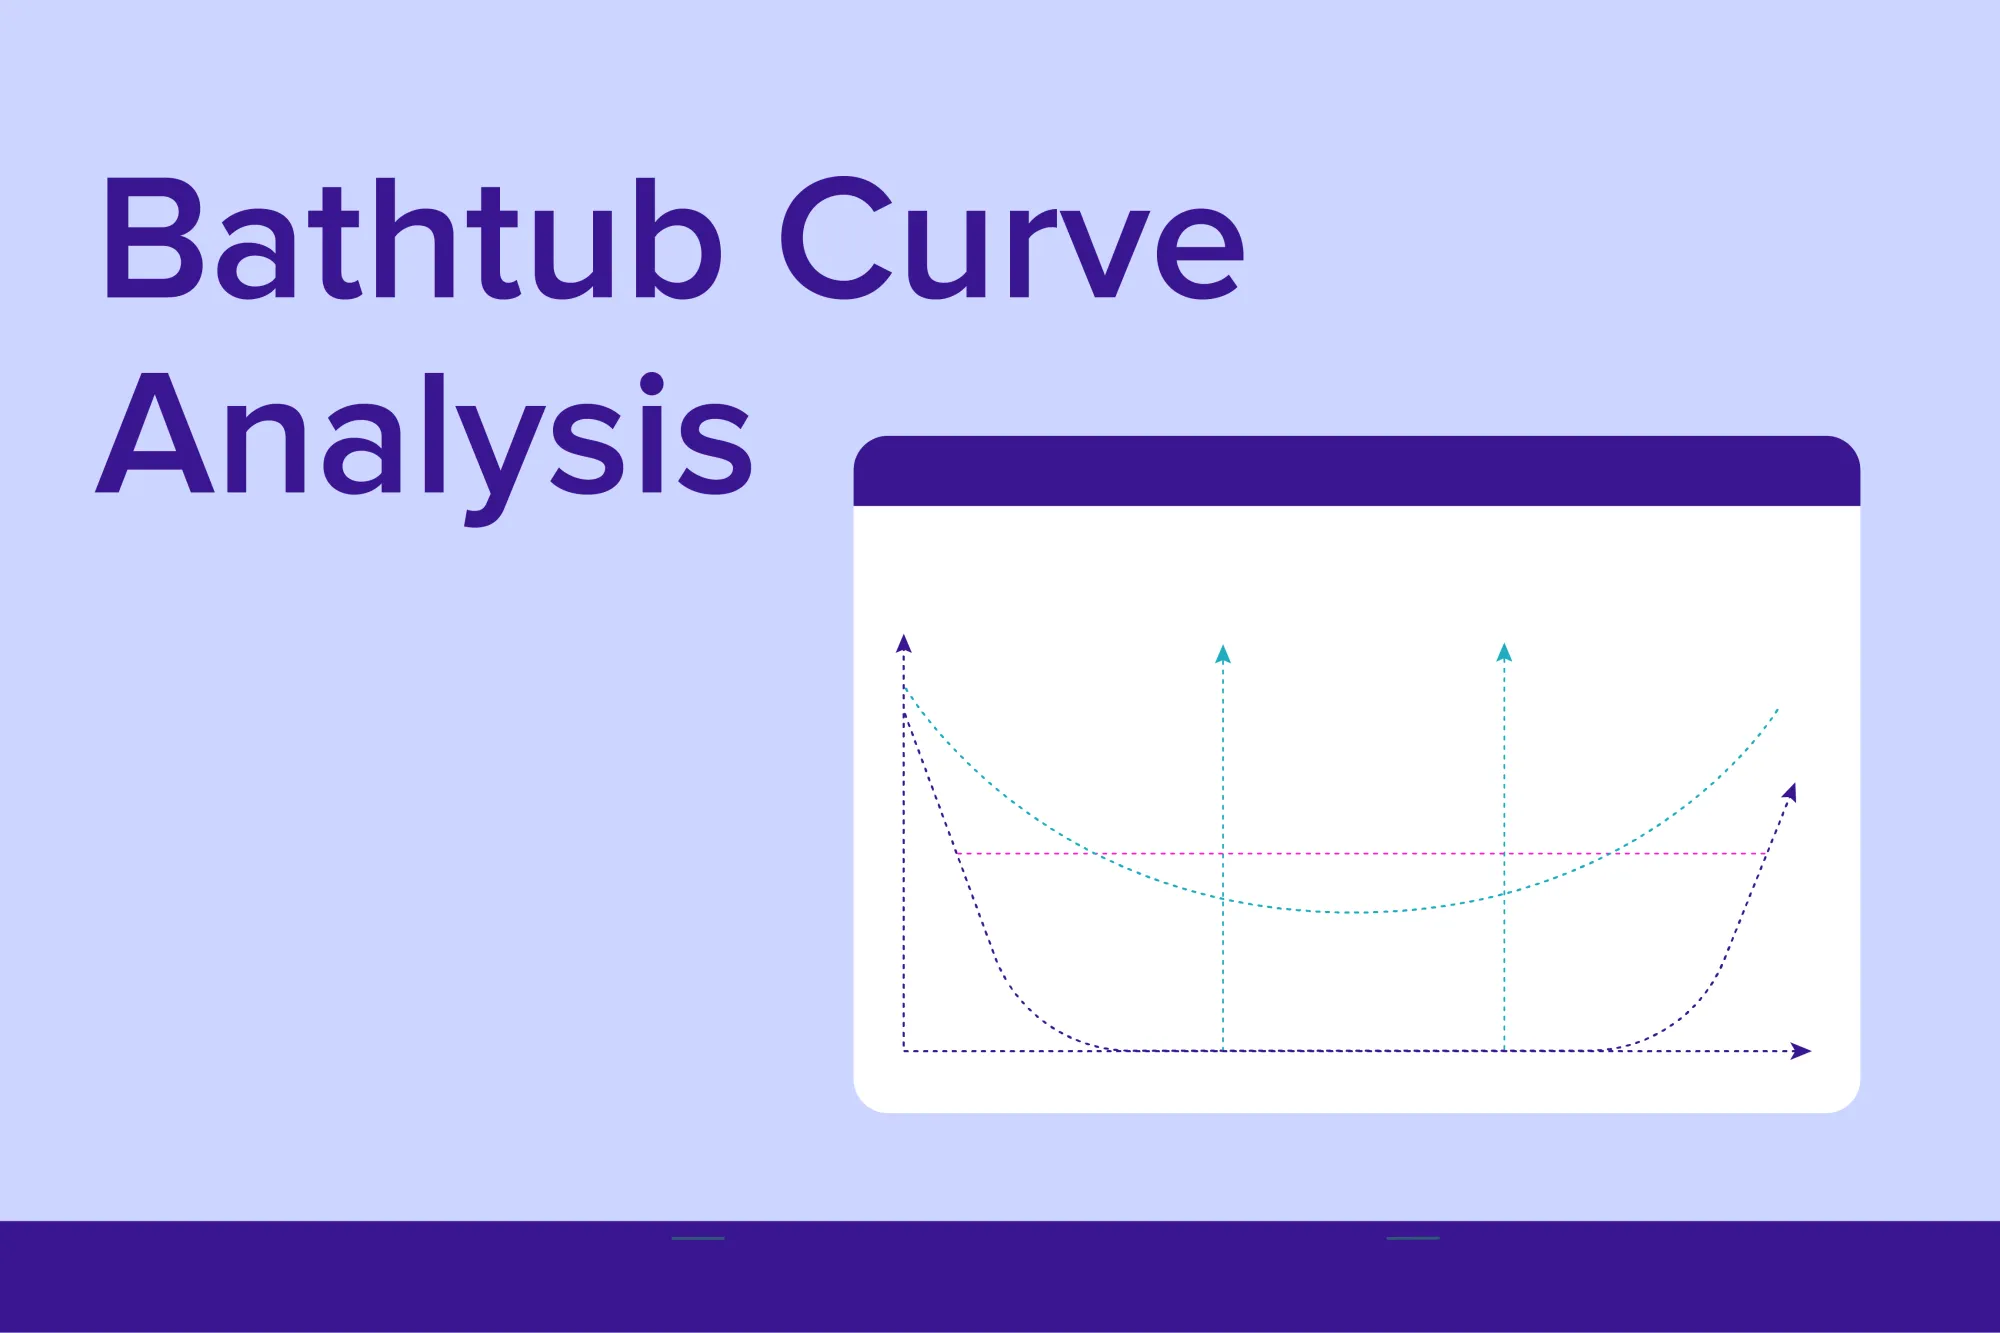 Bathtub curve